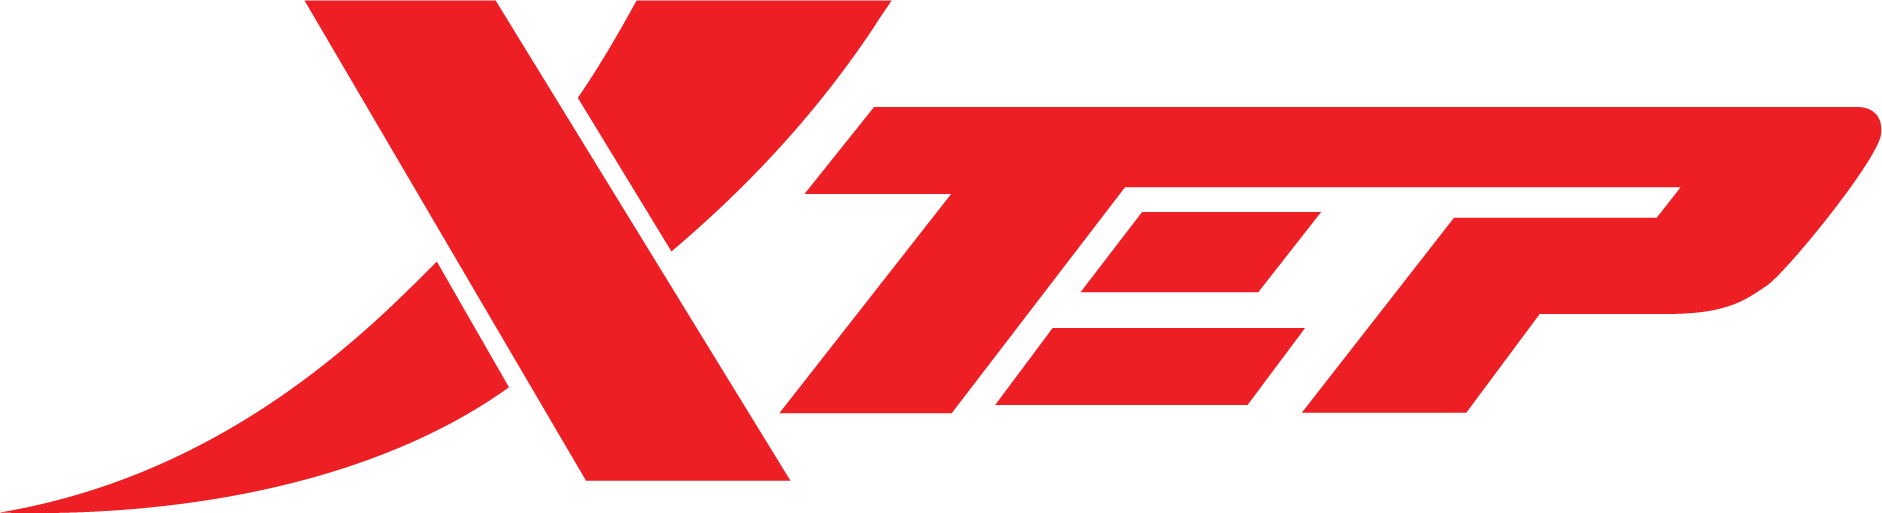 XTEP VIỆT NAM - Thương hiệu thời trang thể thao số 1 HongKong